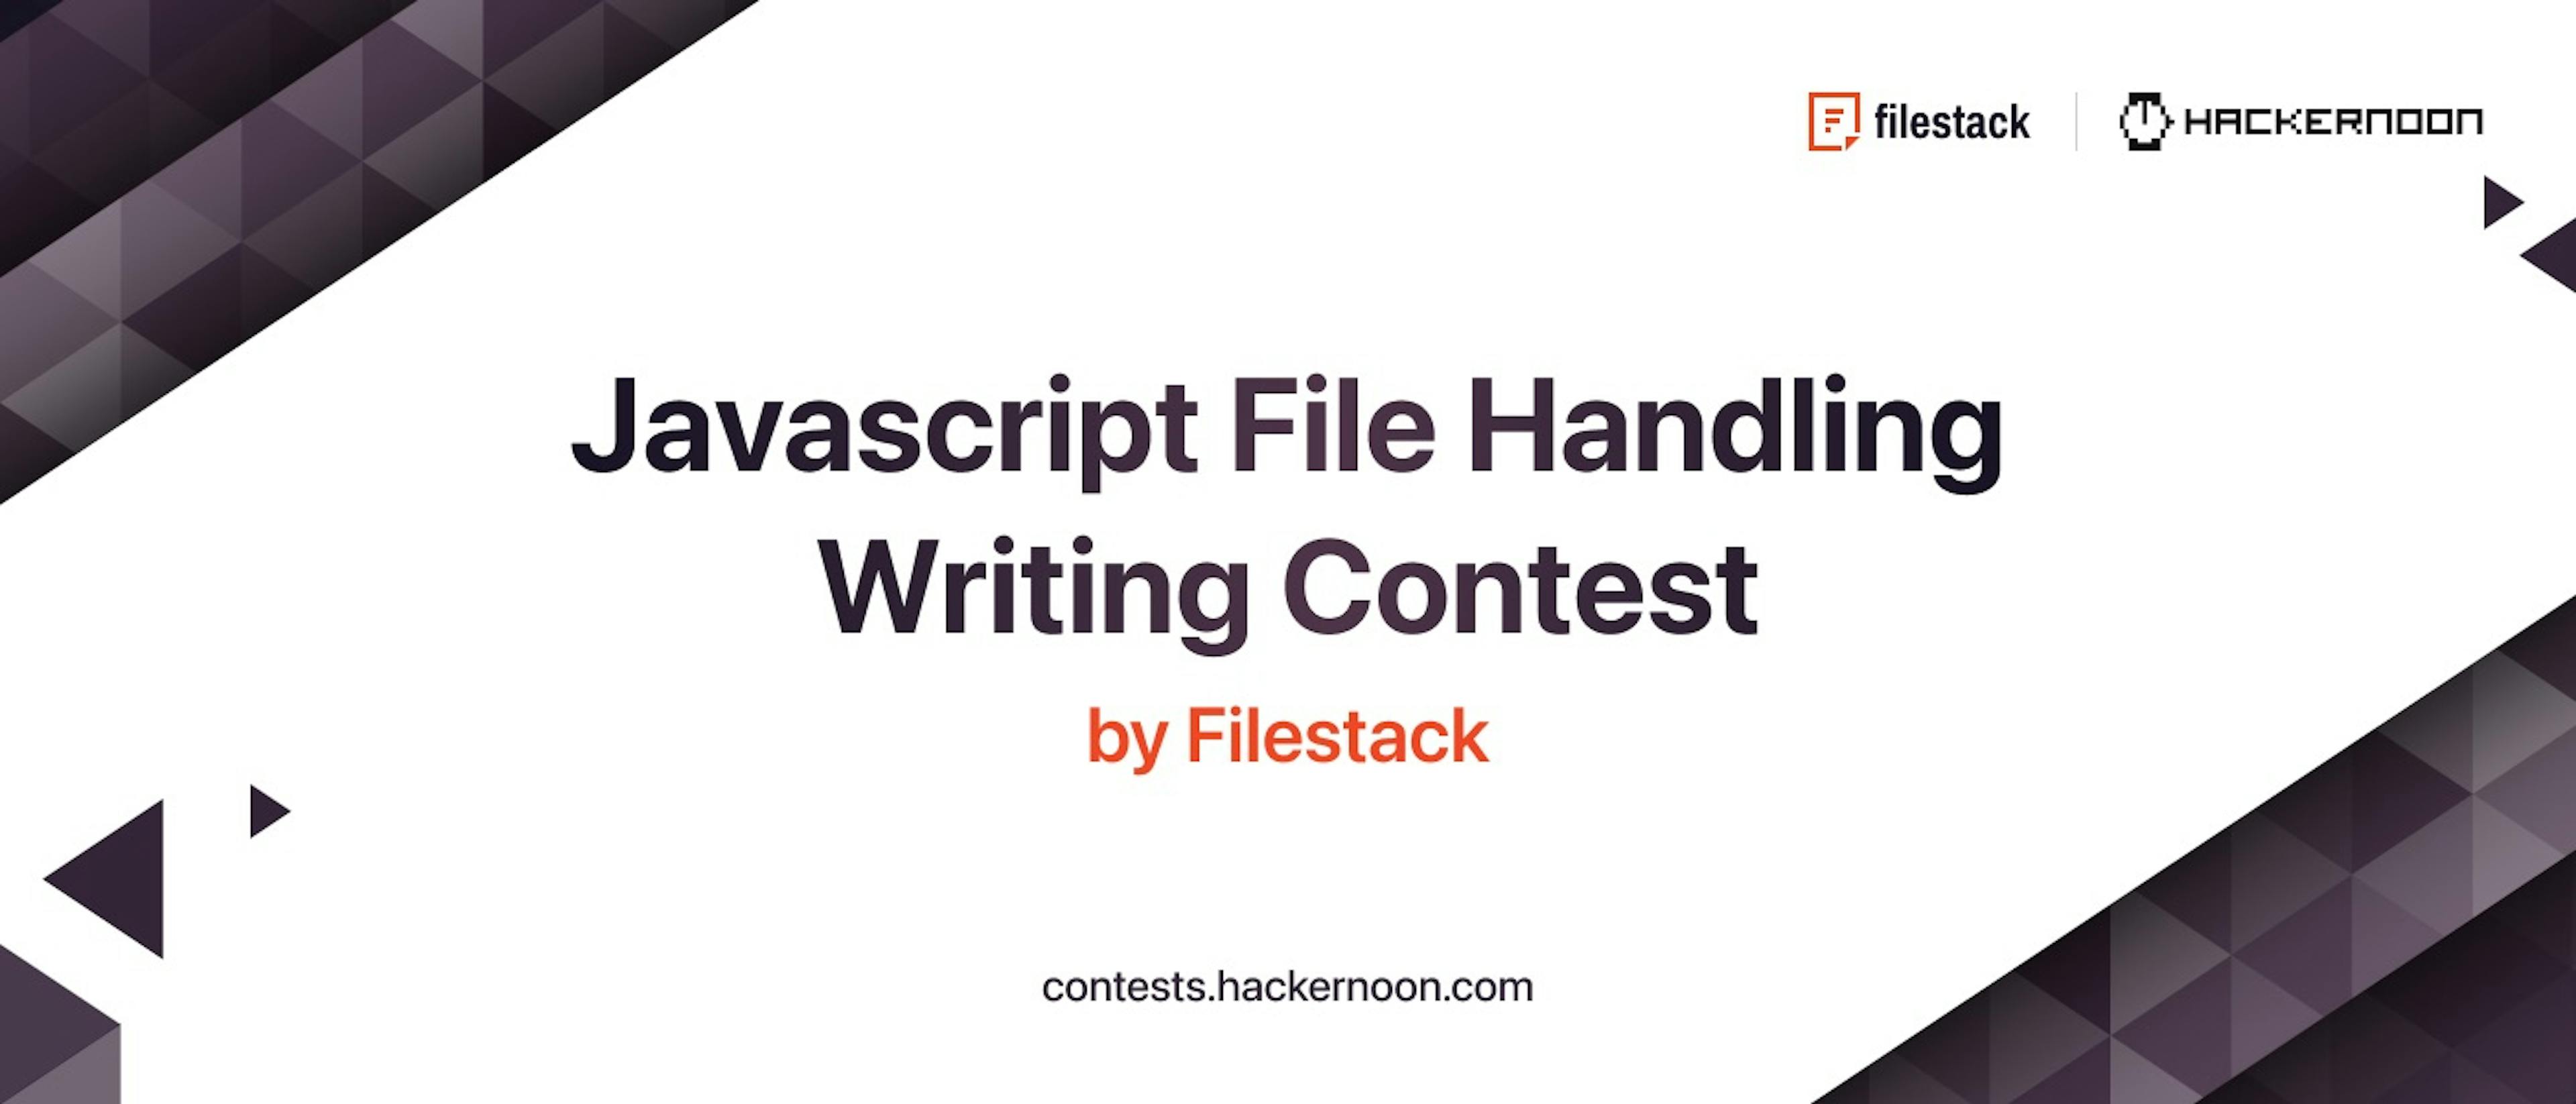 featured image - Concurso de escritura de manejo de archivos Javascript por Filestack y HackerNoon